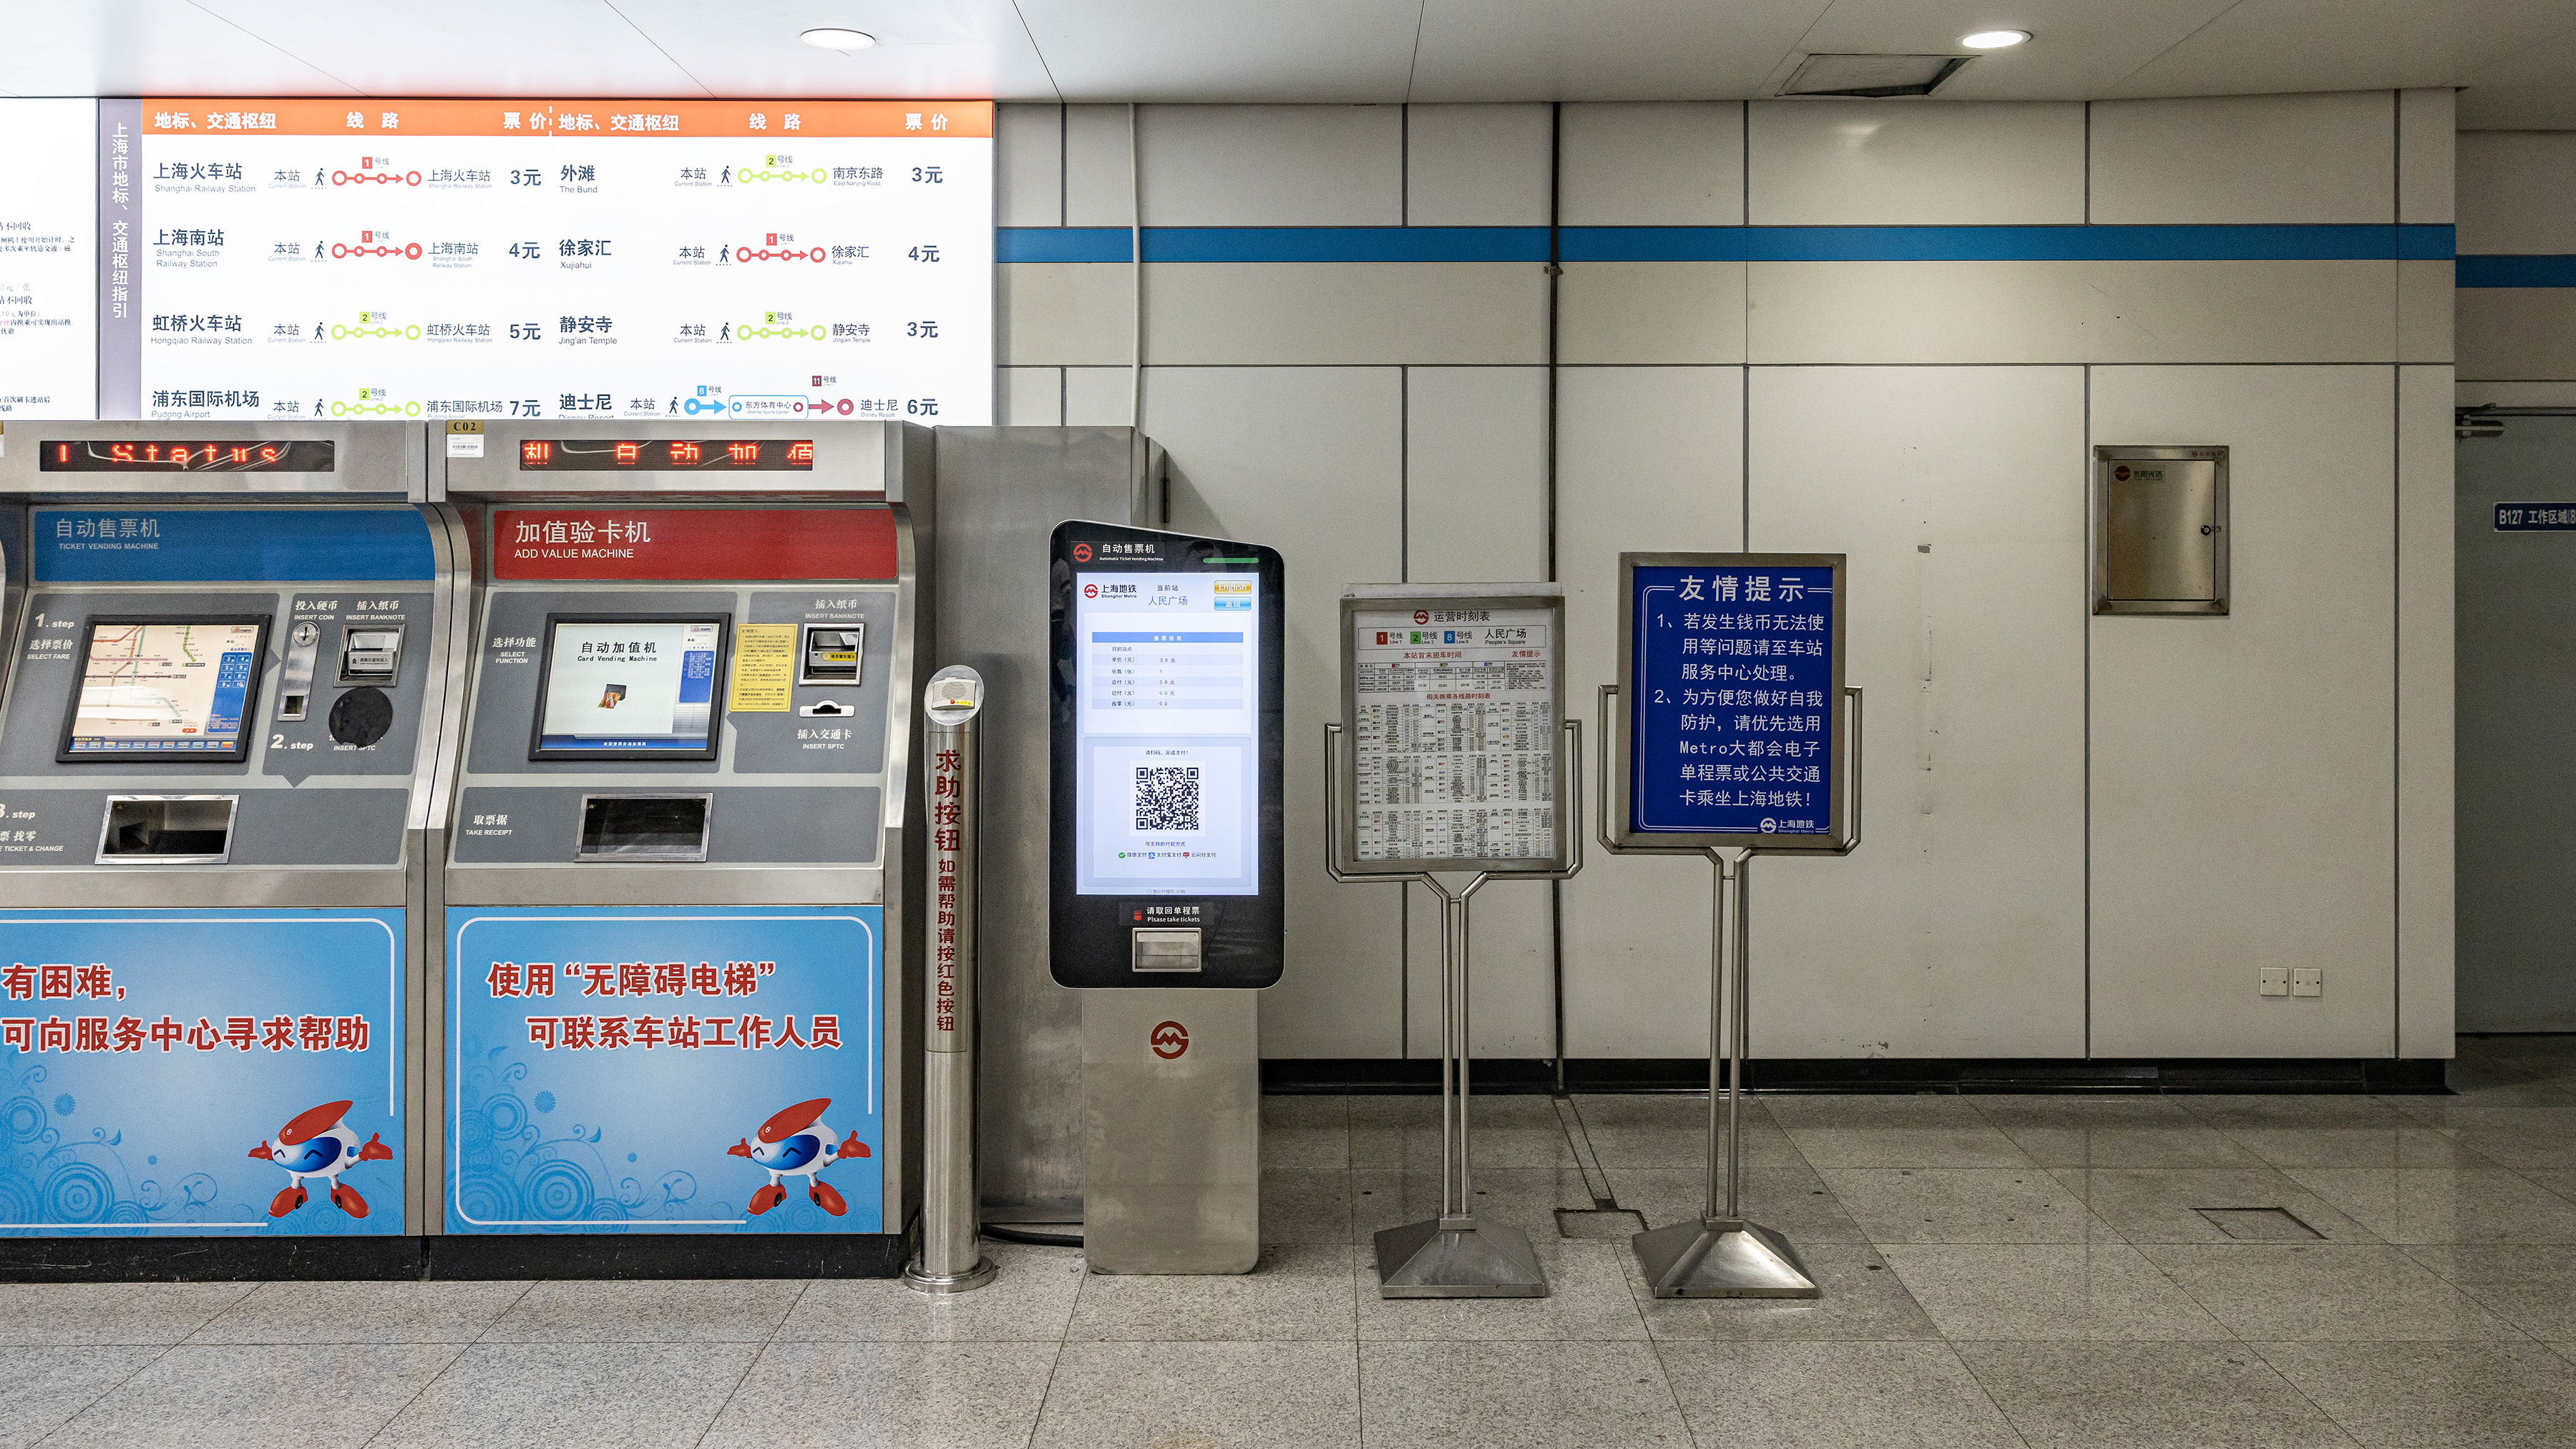 步入人民广场地铁站售票处,一台崭新的上海地铁自助售票机映入眼帘